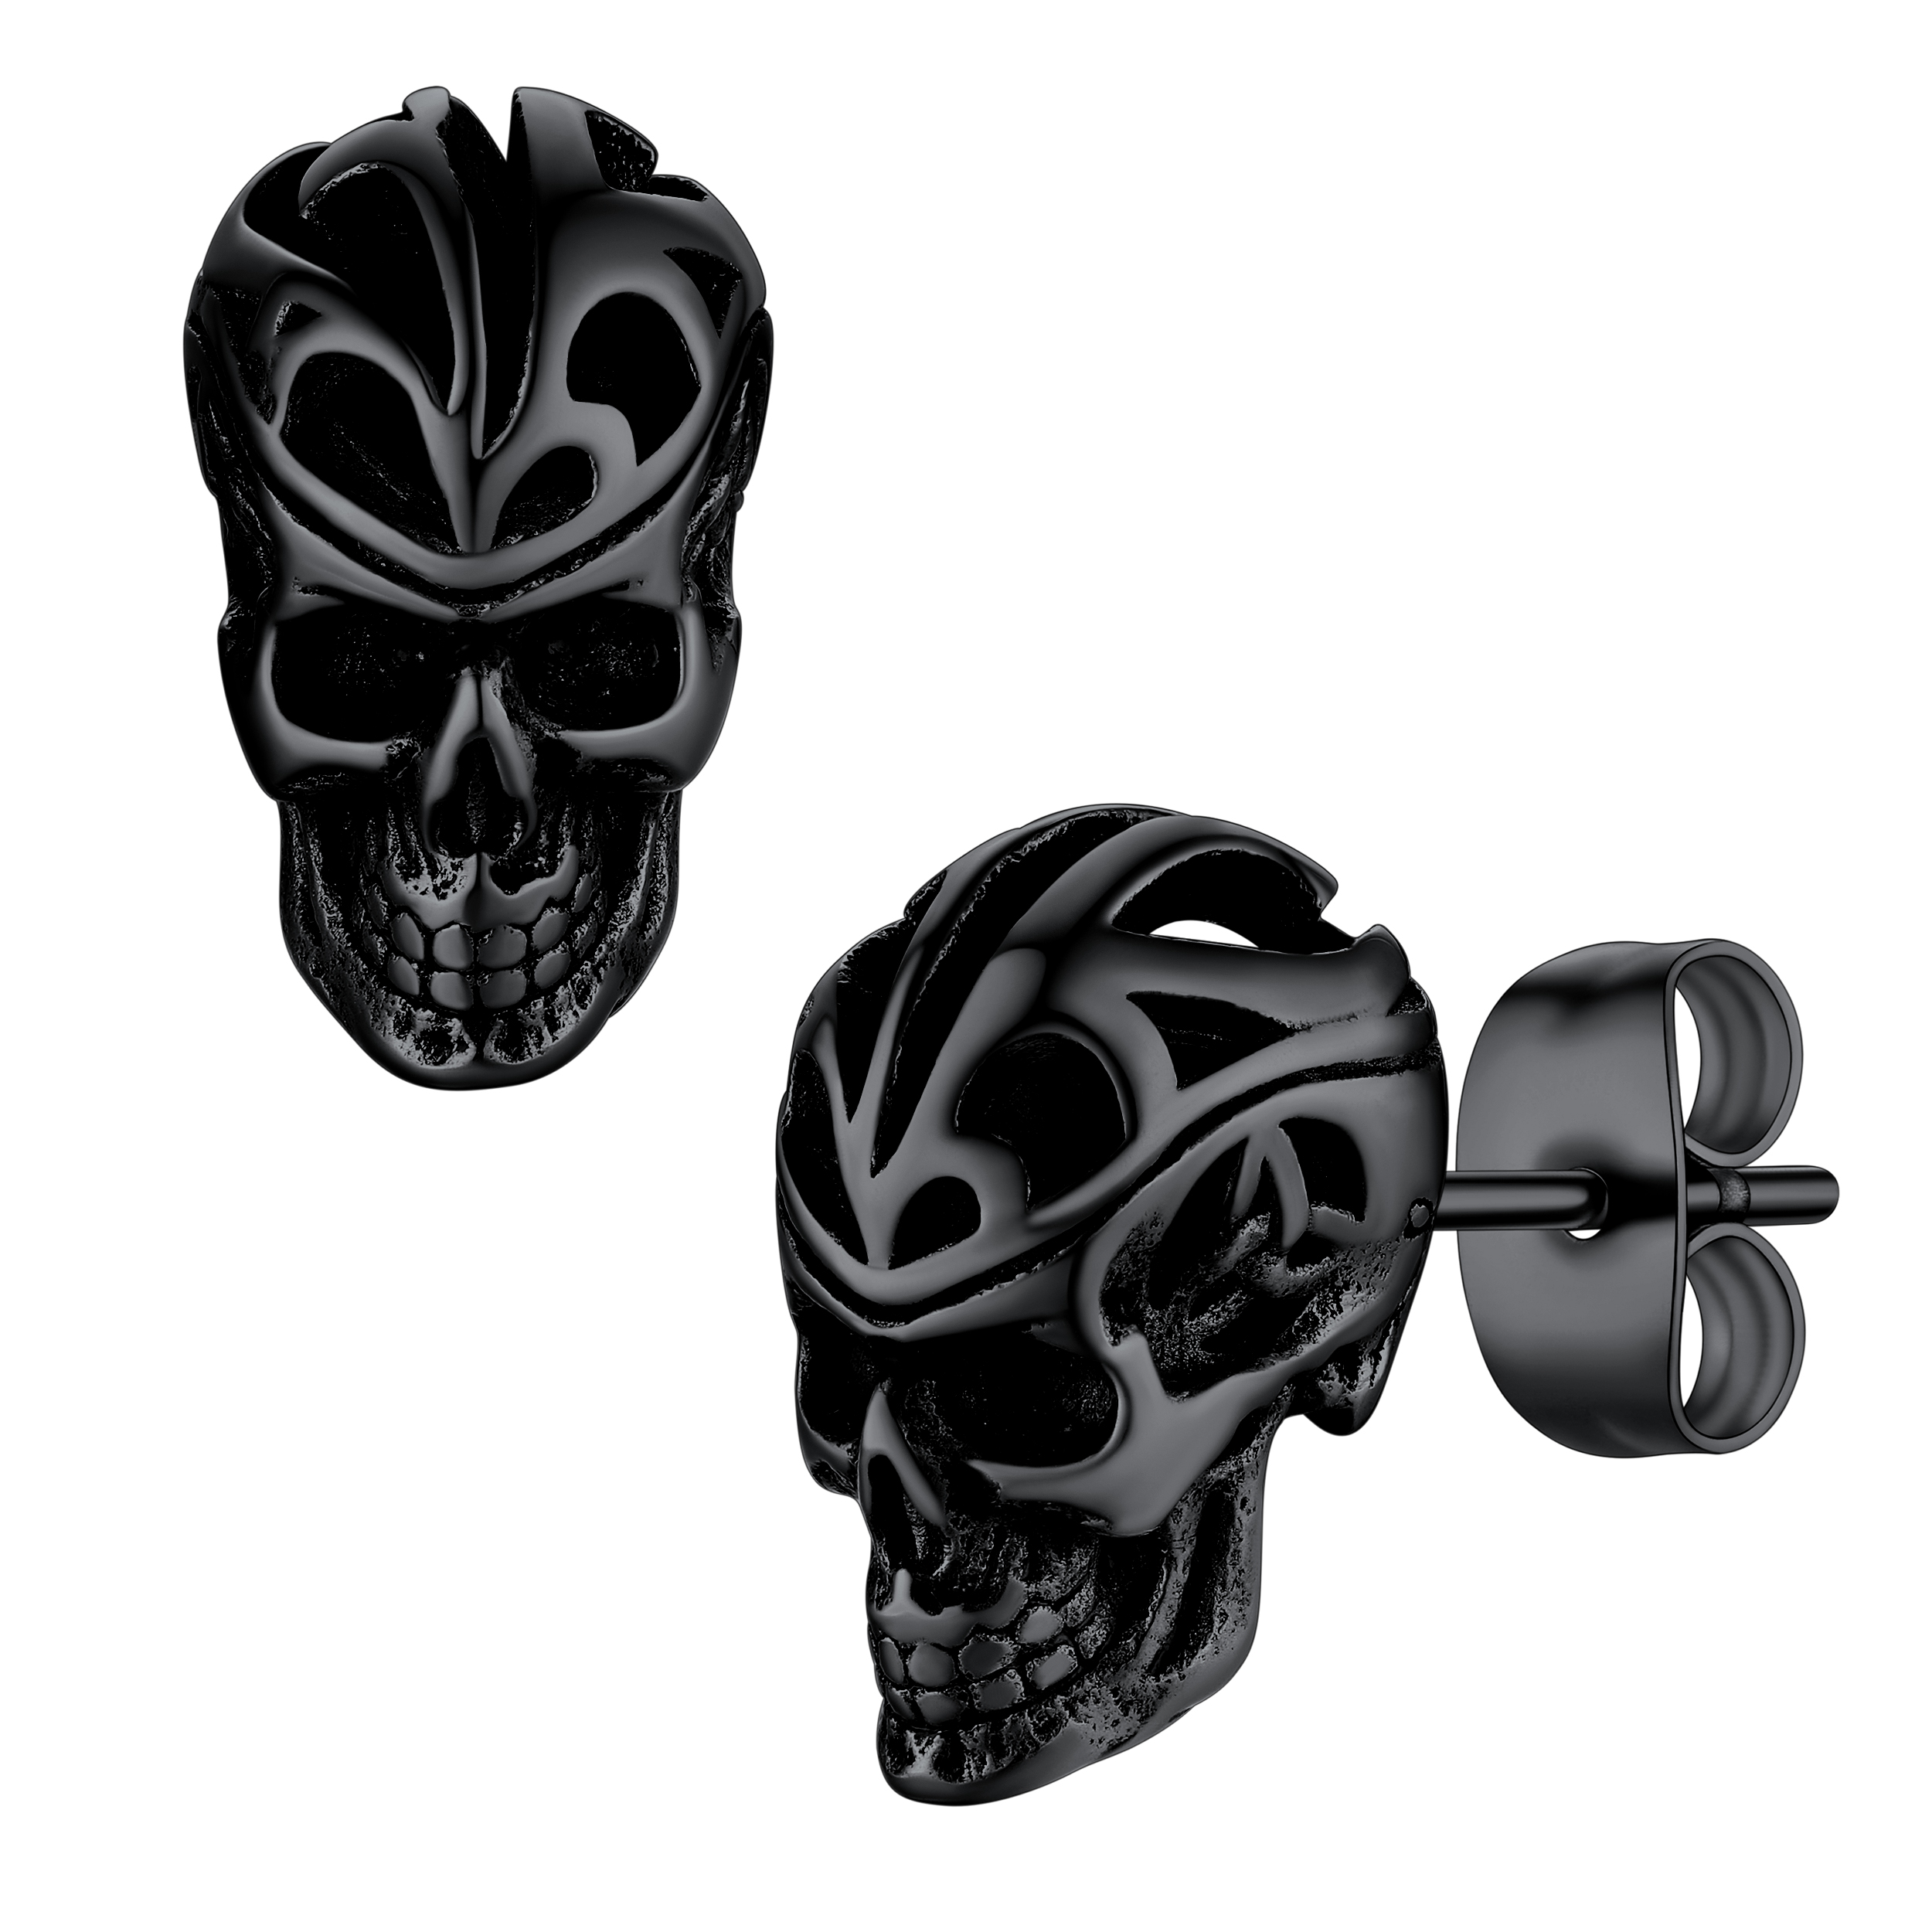 Bestyle Fashion Men Skull Earring Boys Black Skeleton Stud Earrings Gothic Cool Hip Hop Rapper Earrings Punk Halloween Jewelry